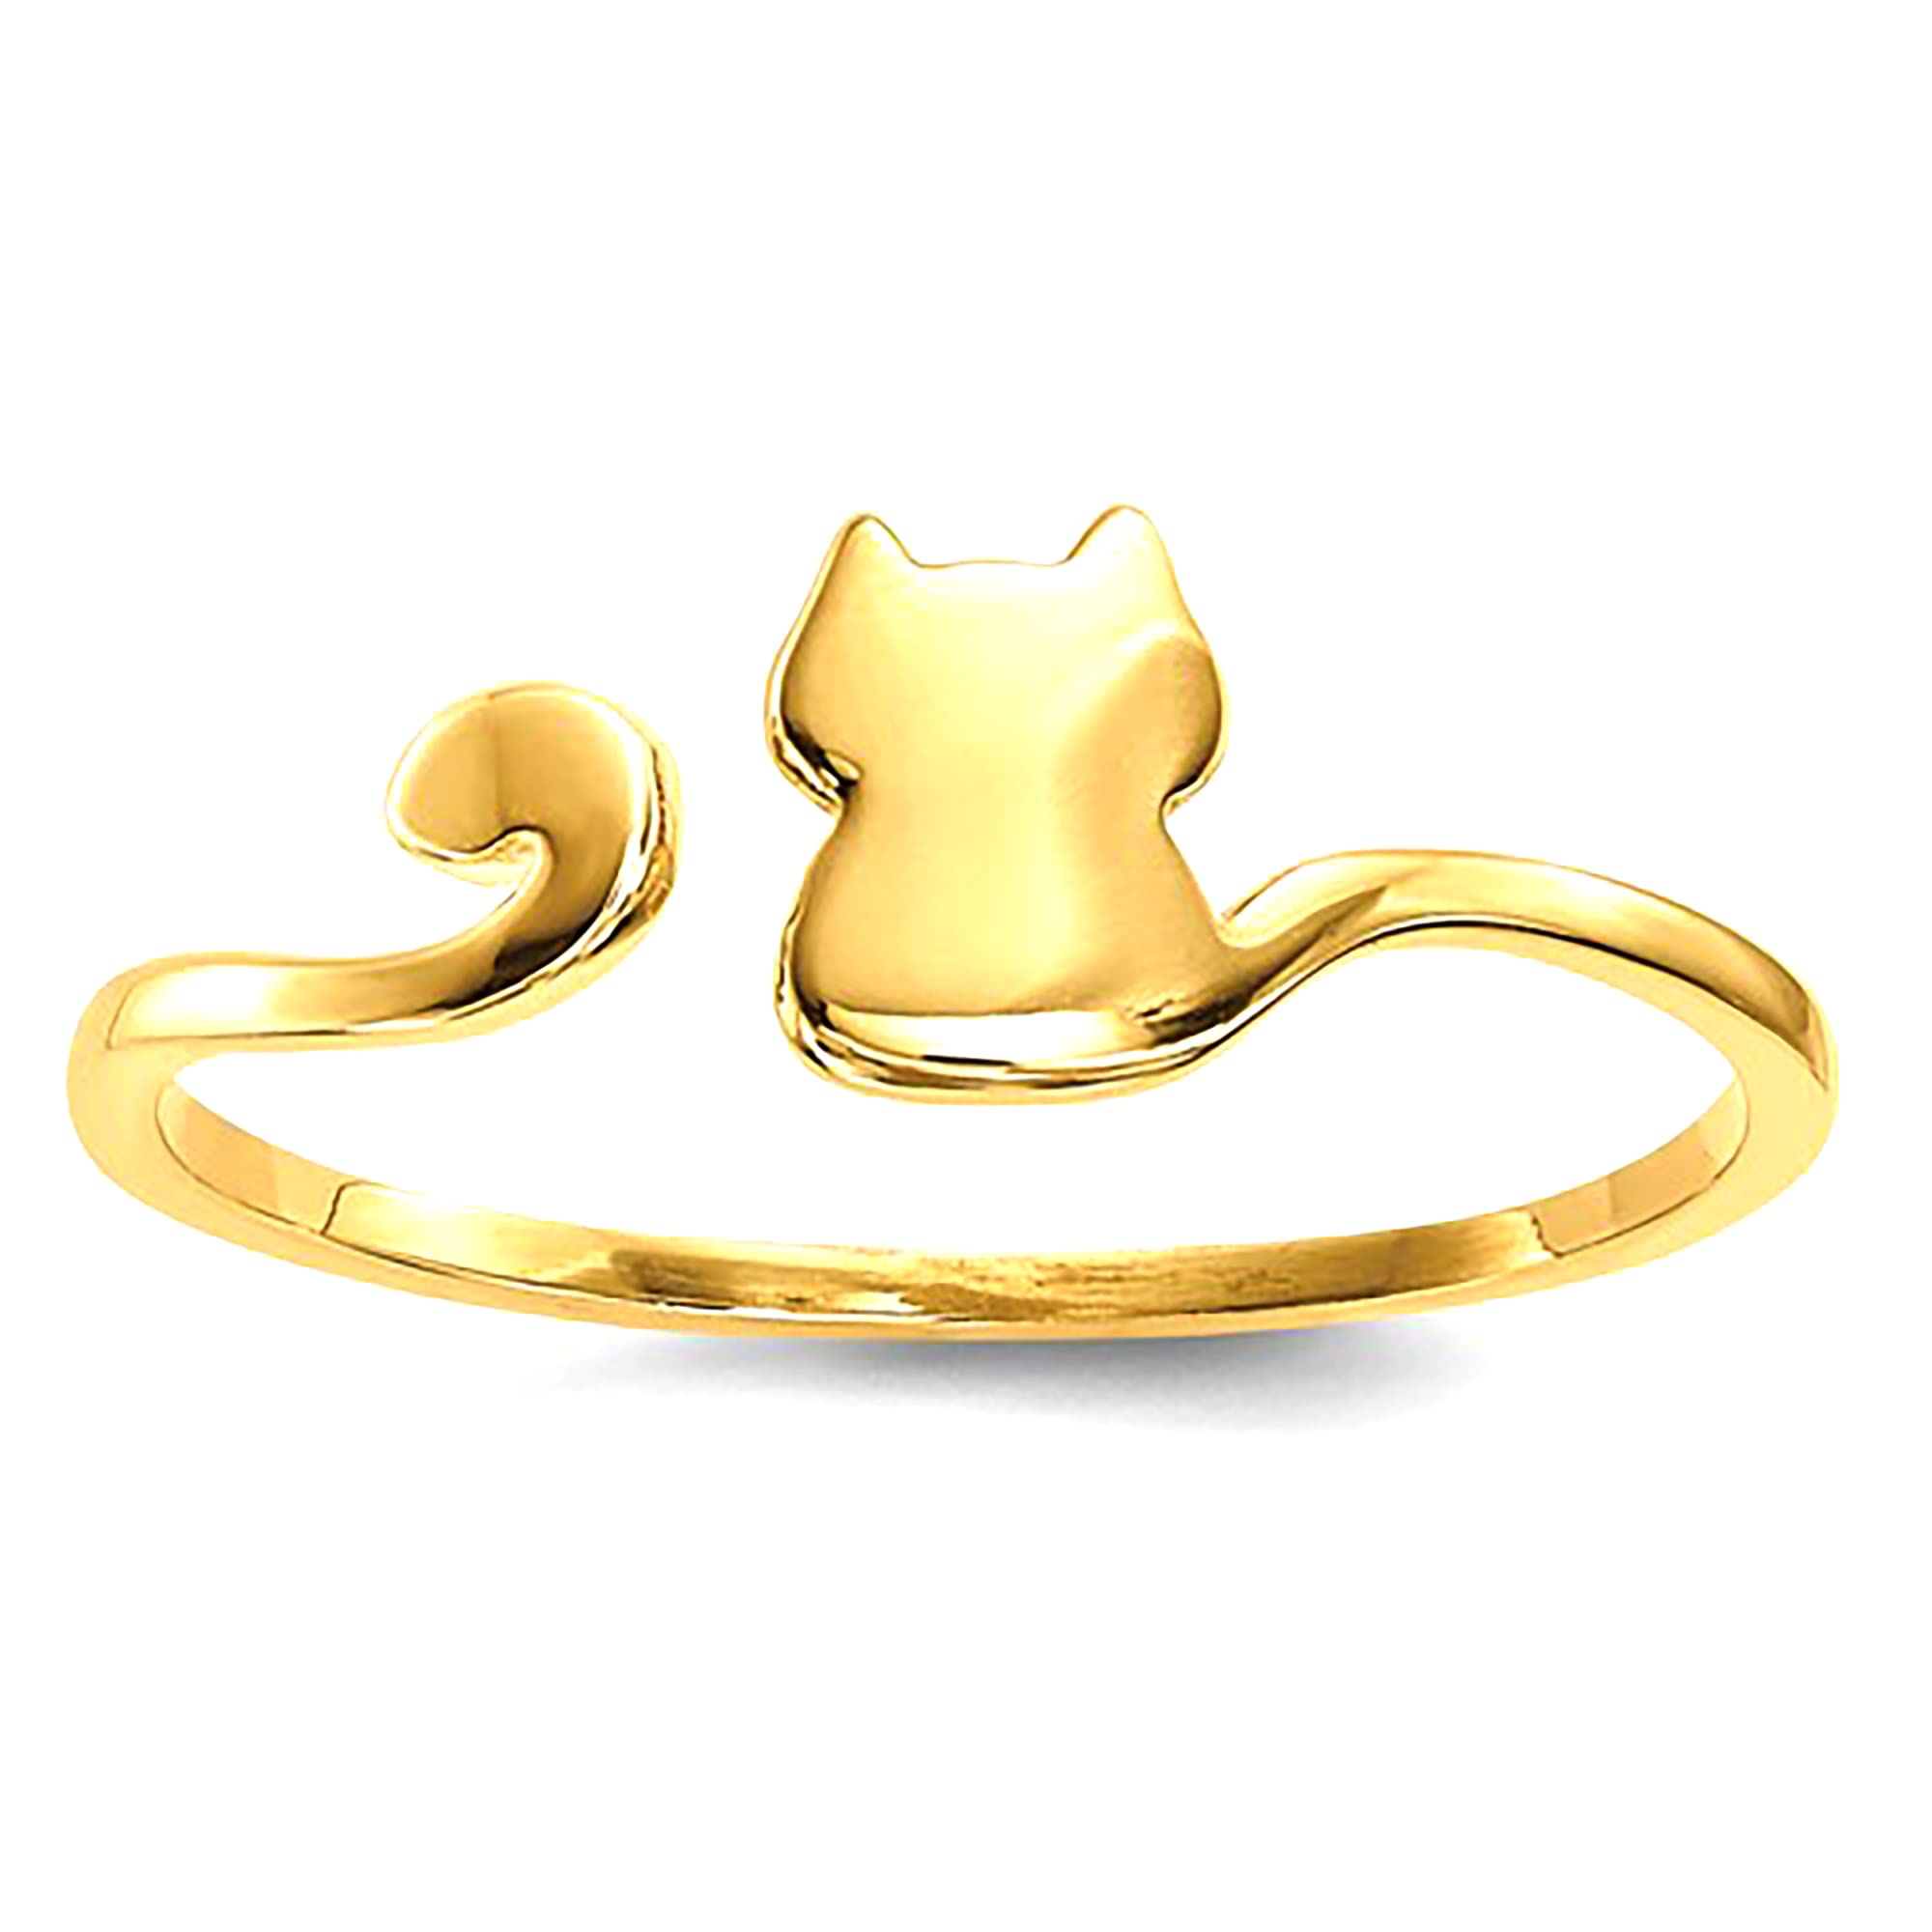 Anello per polsino regolabile con design a gatto lucido in oro giallo 14k, gioielli di design per uomini e donne